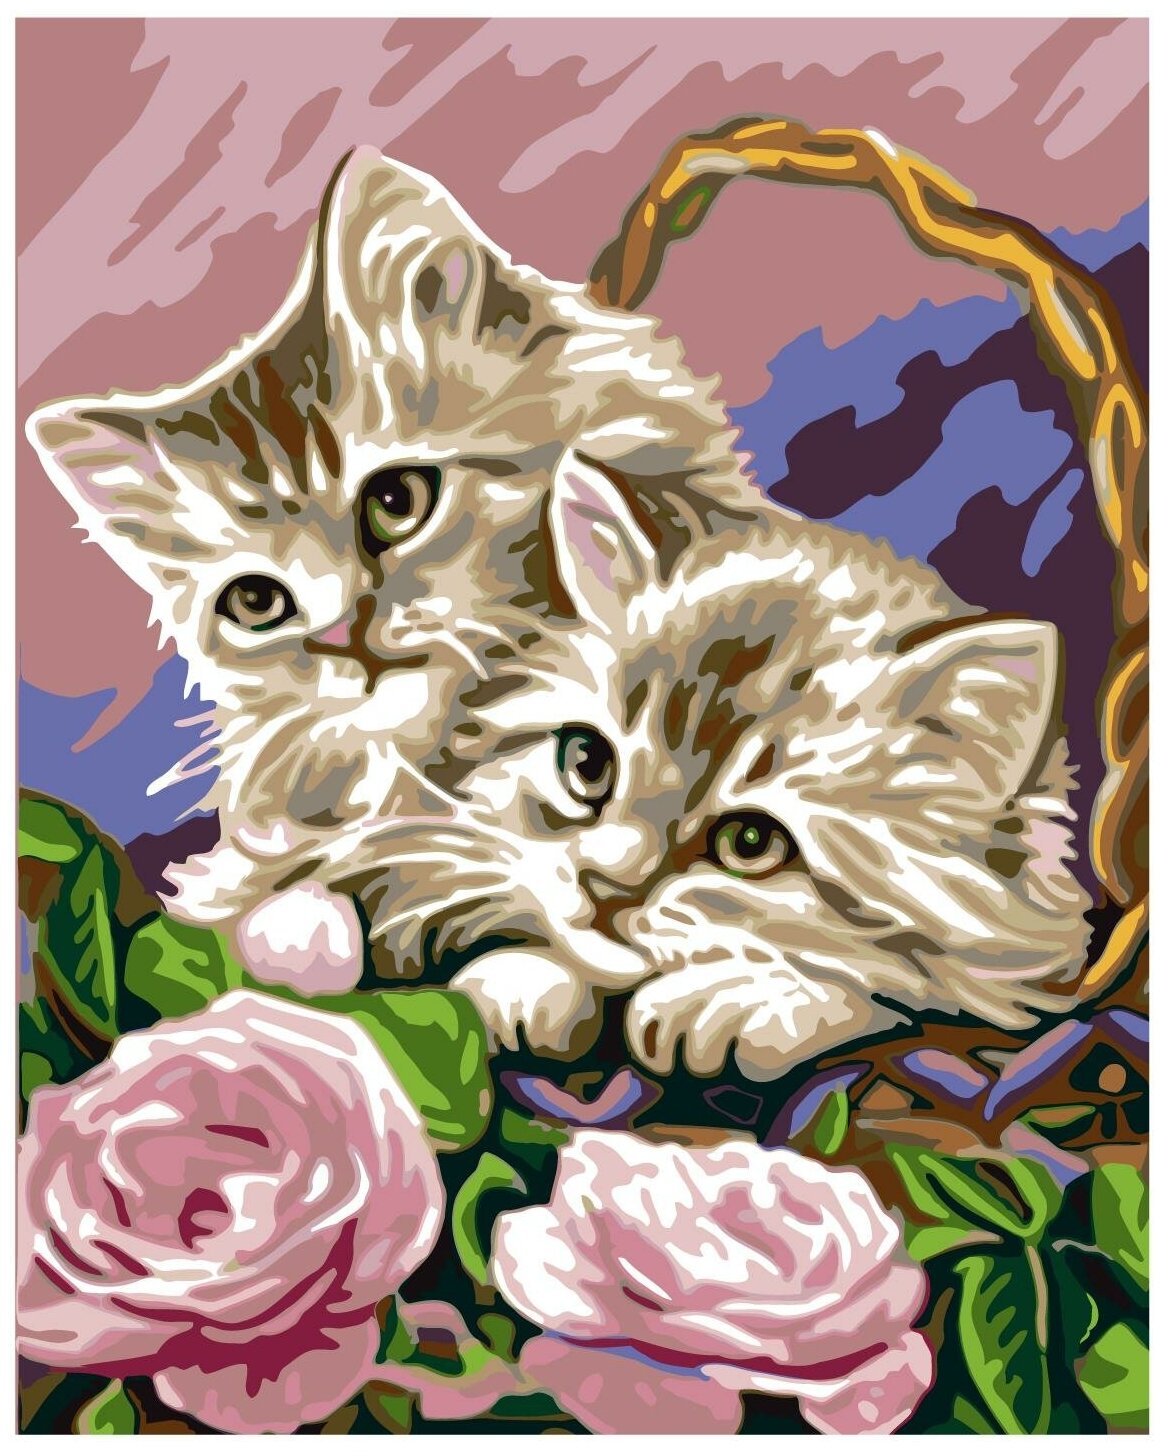 Котята в корзинке Раскраска картина по номерам на холсте